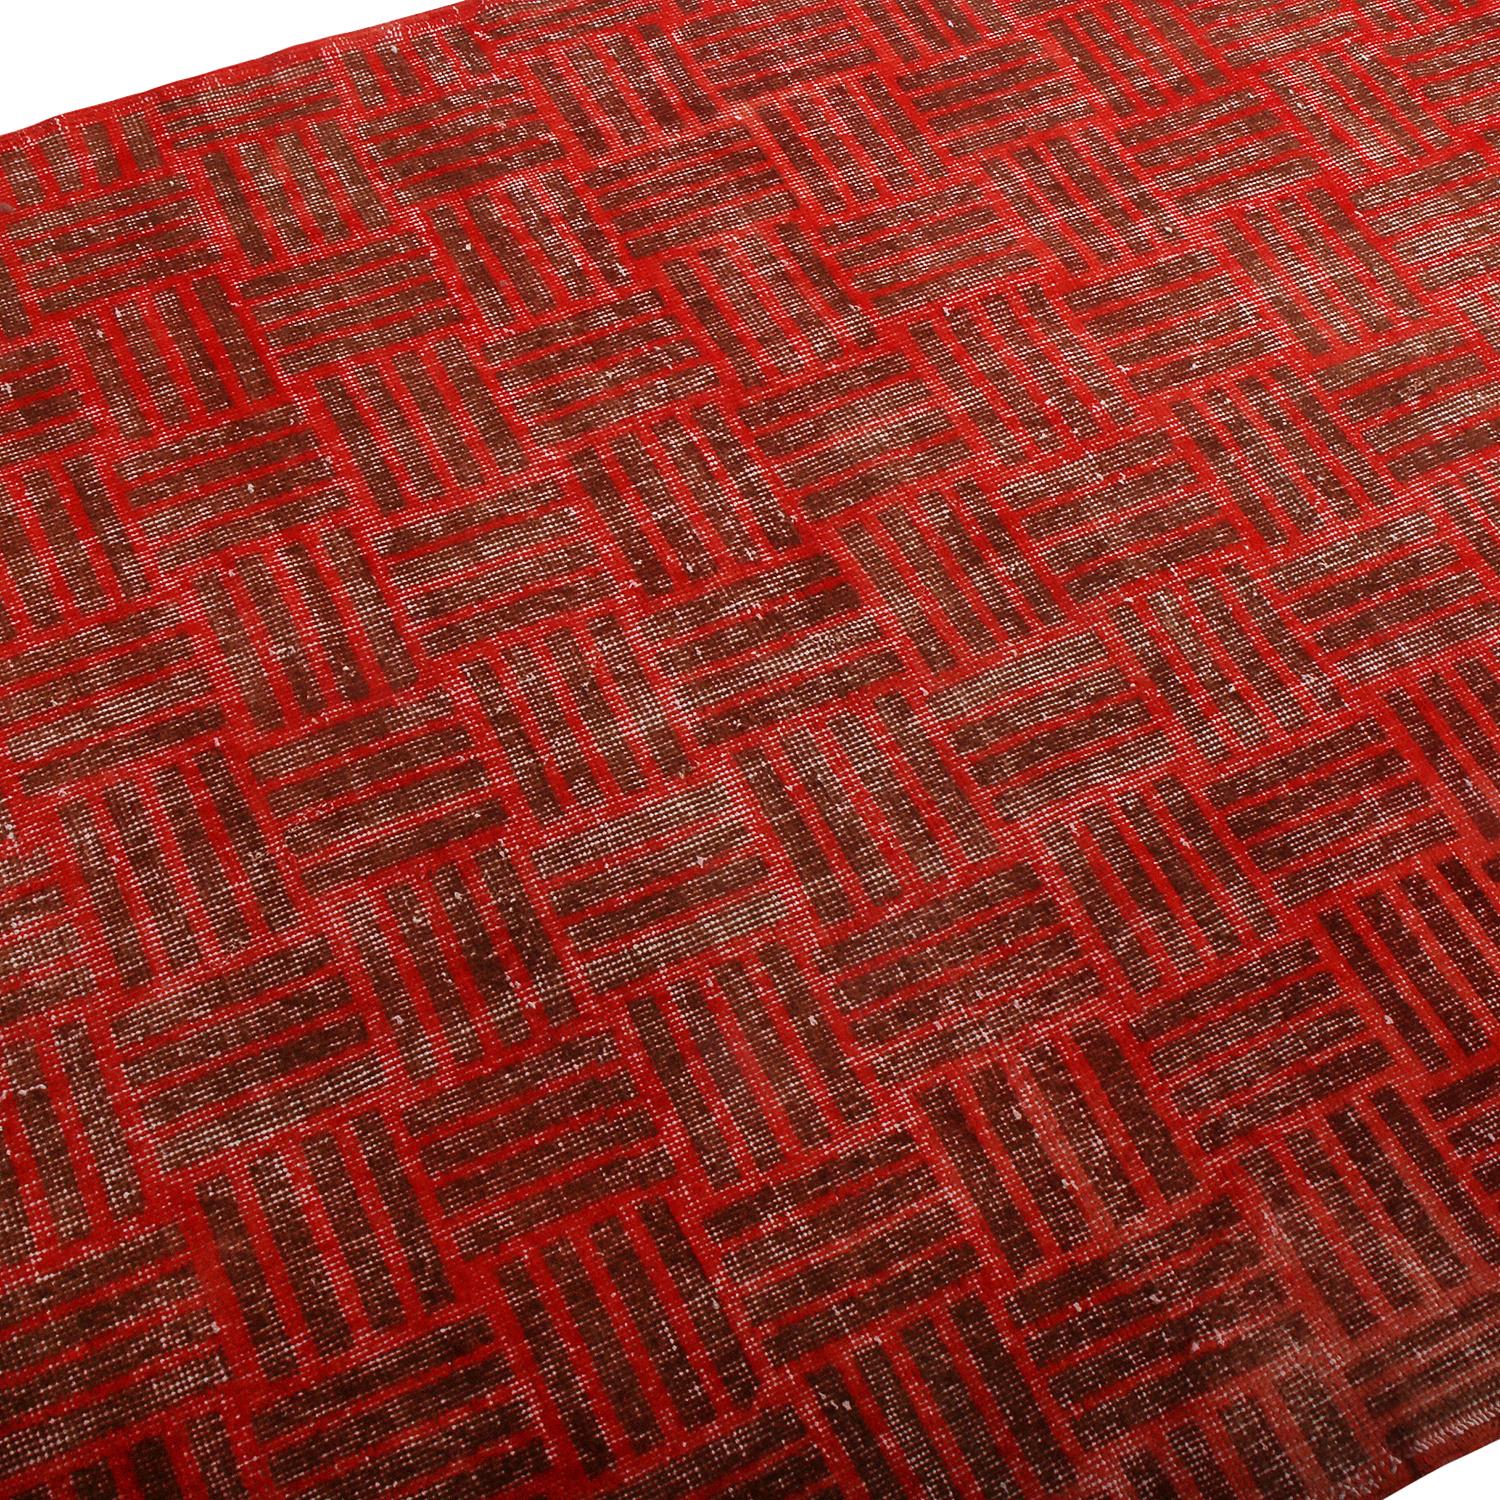 Turkish Vintage Midcentury Red and Brown Geometric Wool Rug by Rug & Kilim For Sale